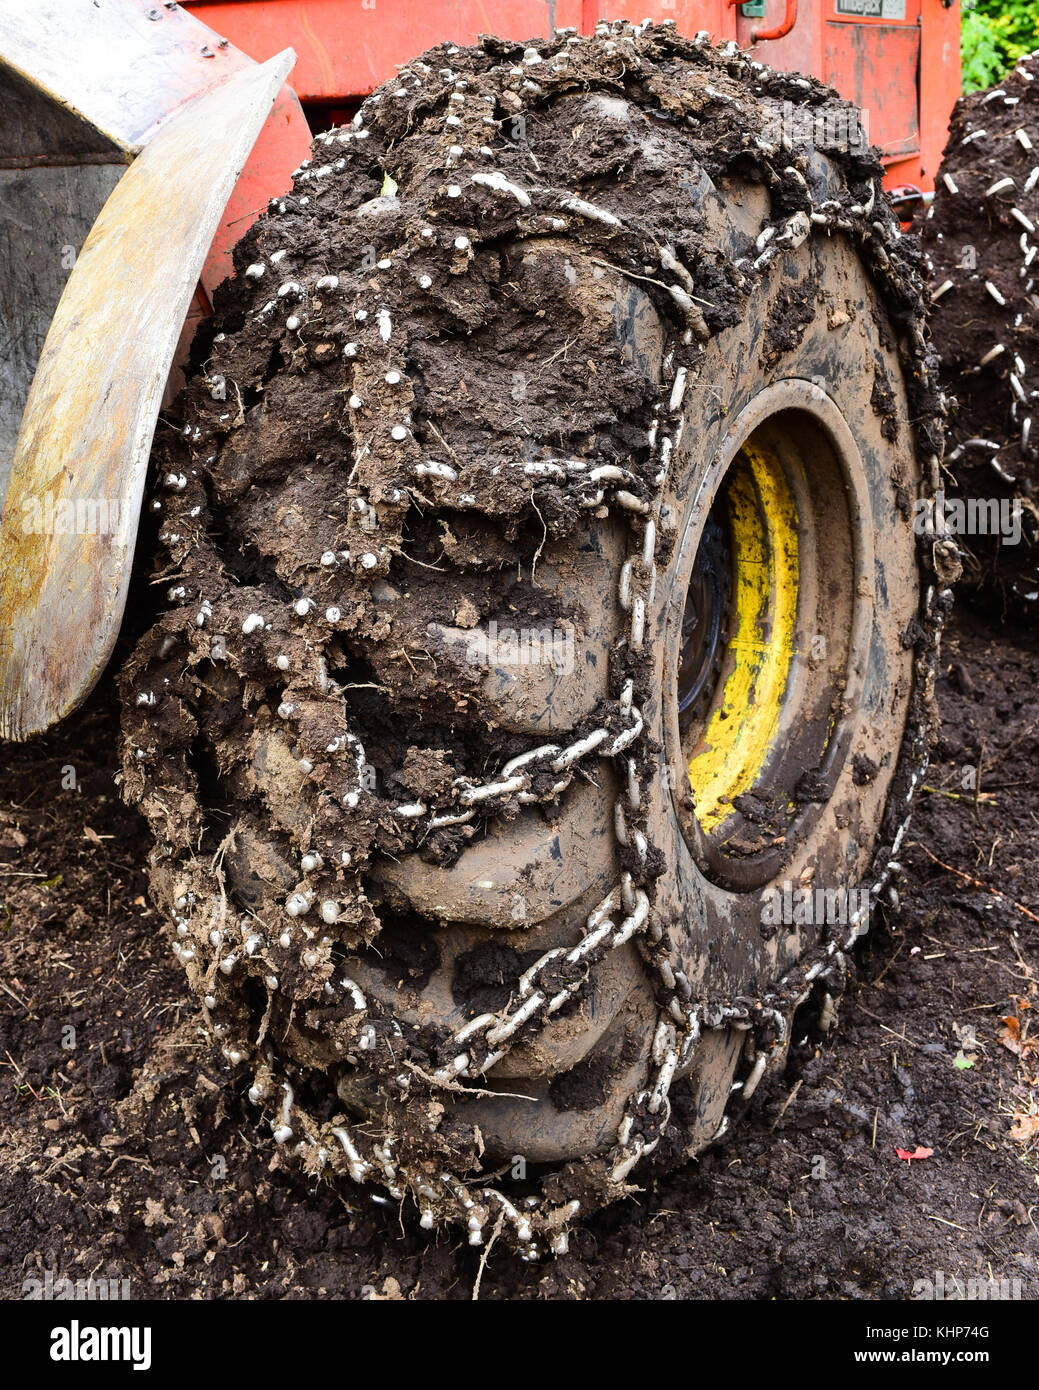 Nahaufnahme eines skidder Traktor Reifen mit Ketten mit Schlamm bedeckt. Stockfoto